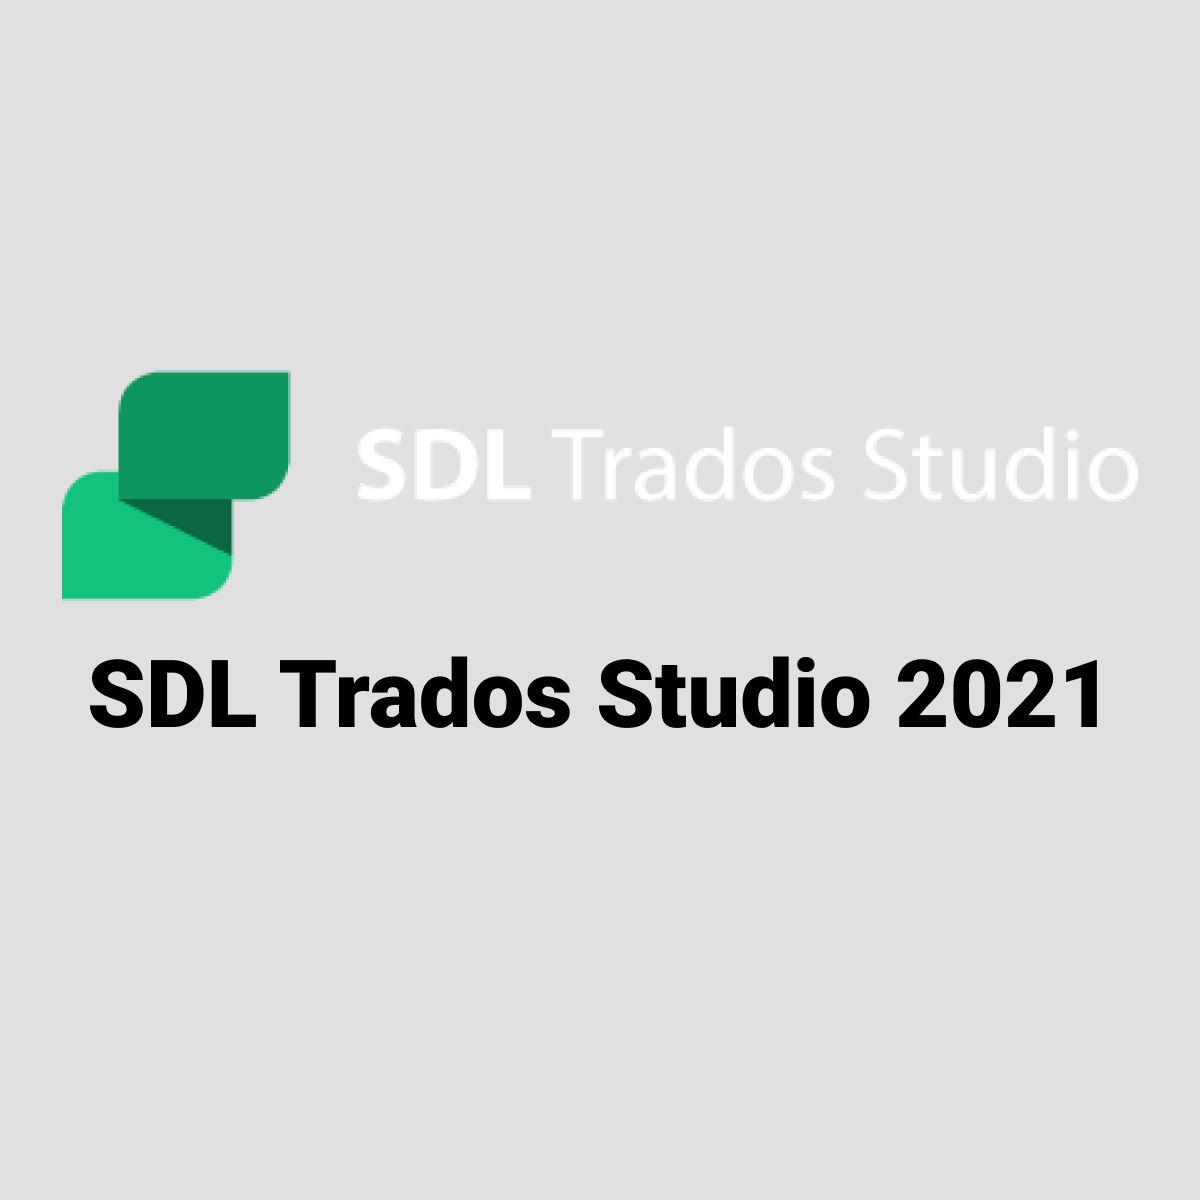 SDL Certification – SDL Trados Studio 2019 Advanced